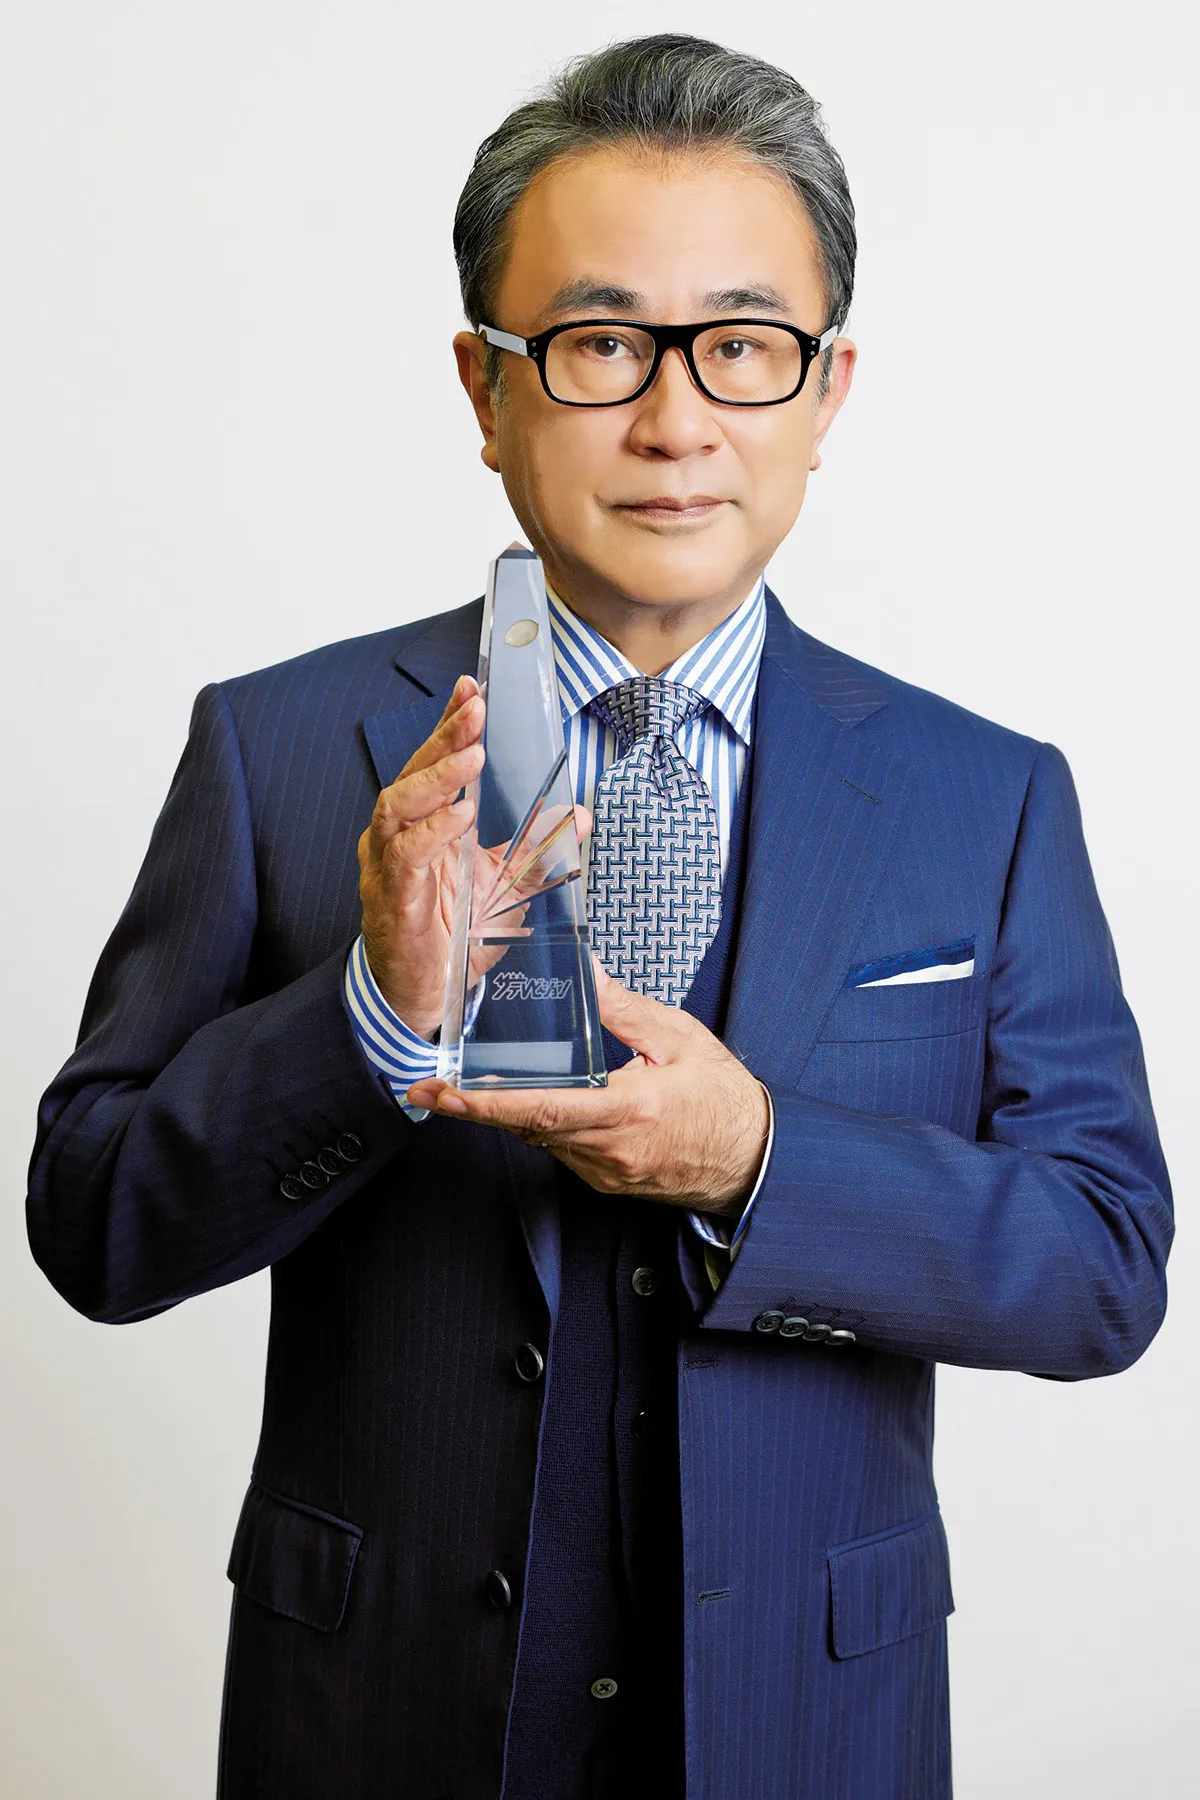 「鎌倉殿の13人」を手掛けた三谷幸喜氏が第114回ドラマアカデミー賞で脚本賞を受賞